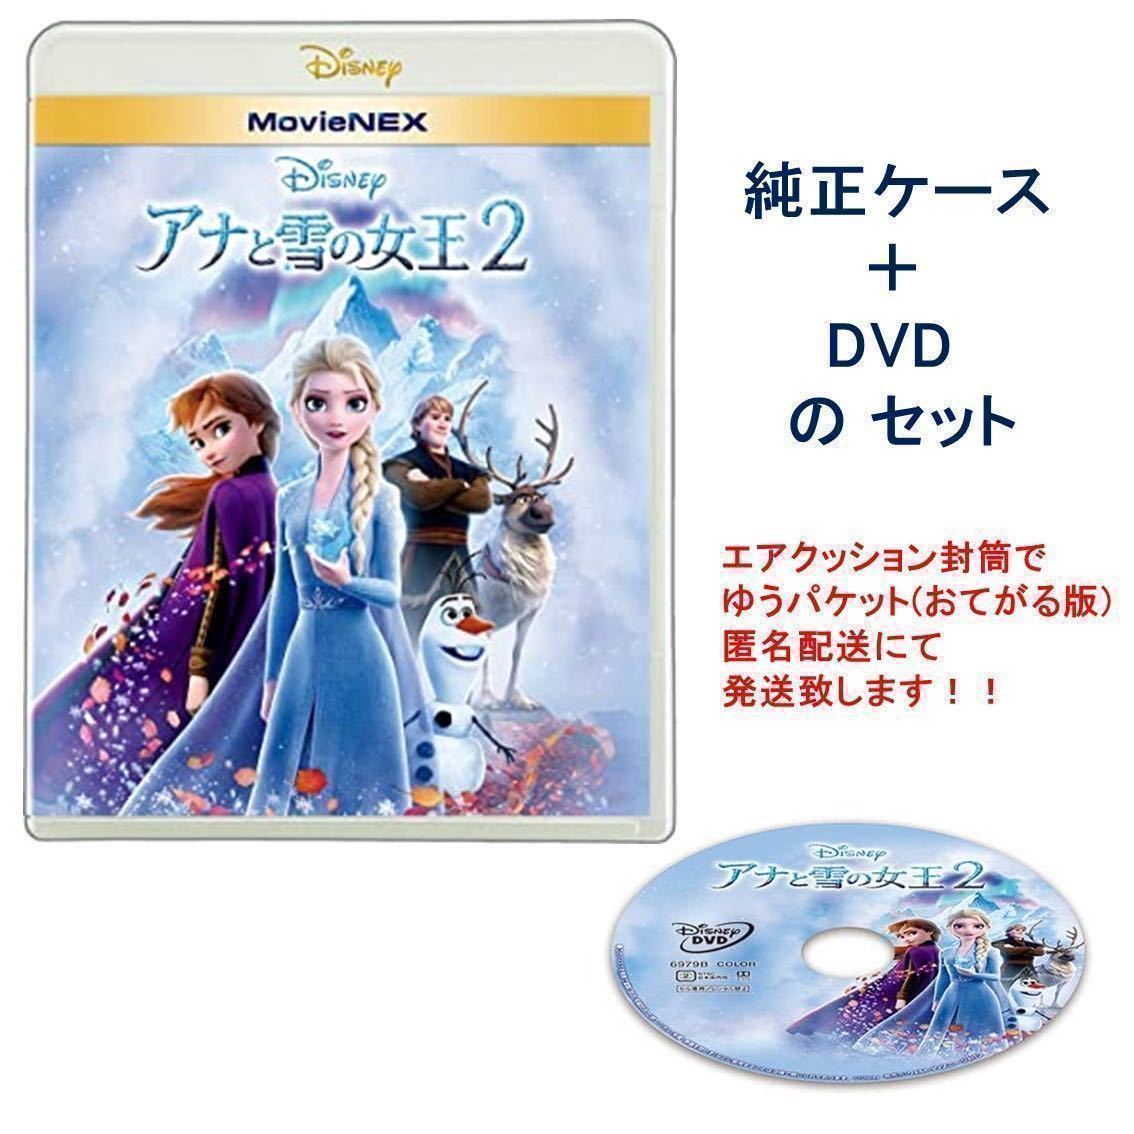 Y506 アナと雪の女王2 DVD と 純正ケース 未再生品 国内正規品 同封可 ディズニー MovieNEX DVDのみ(ブルーレイ・Magicコードなし)